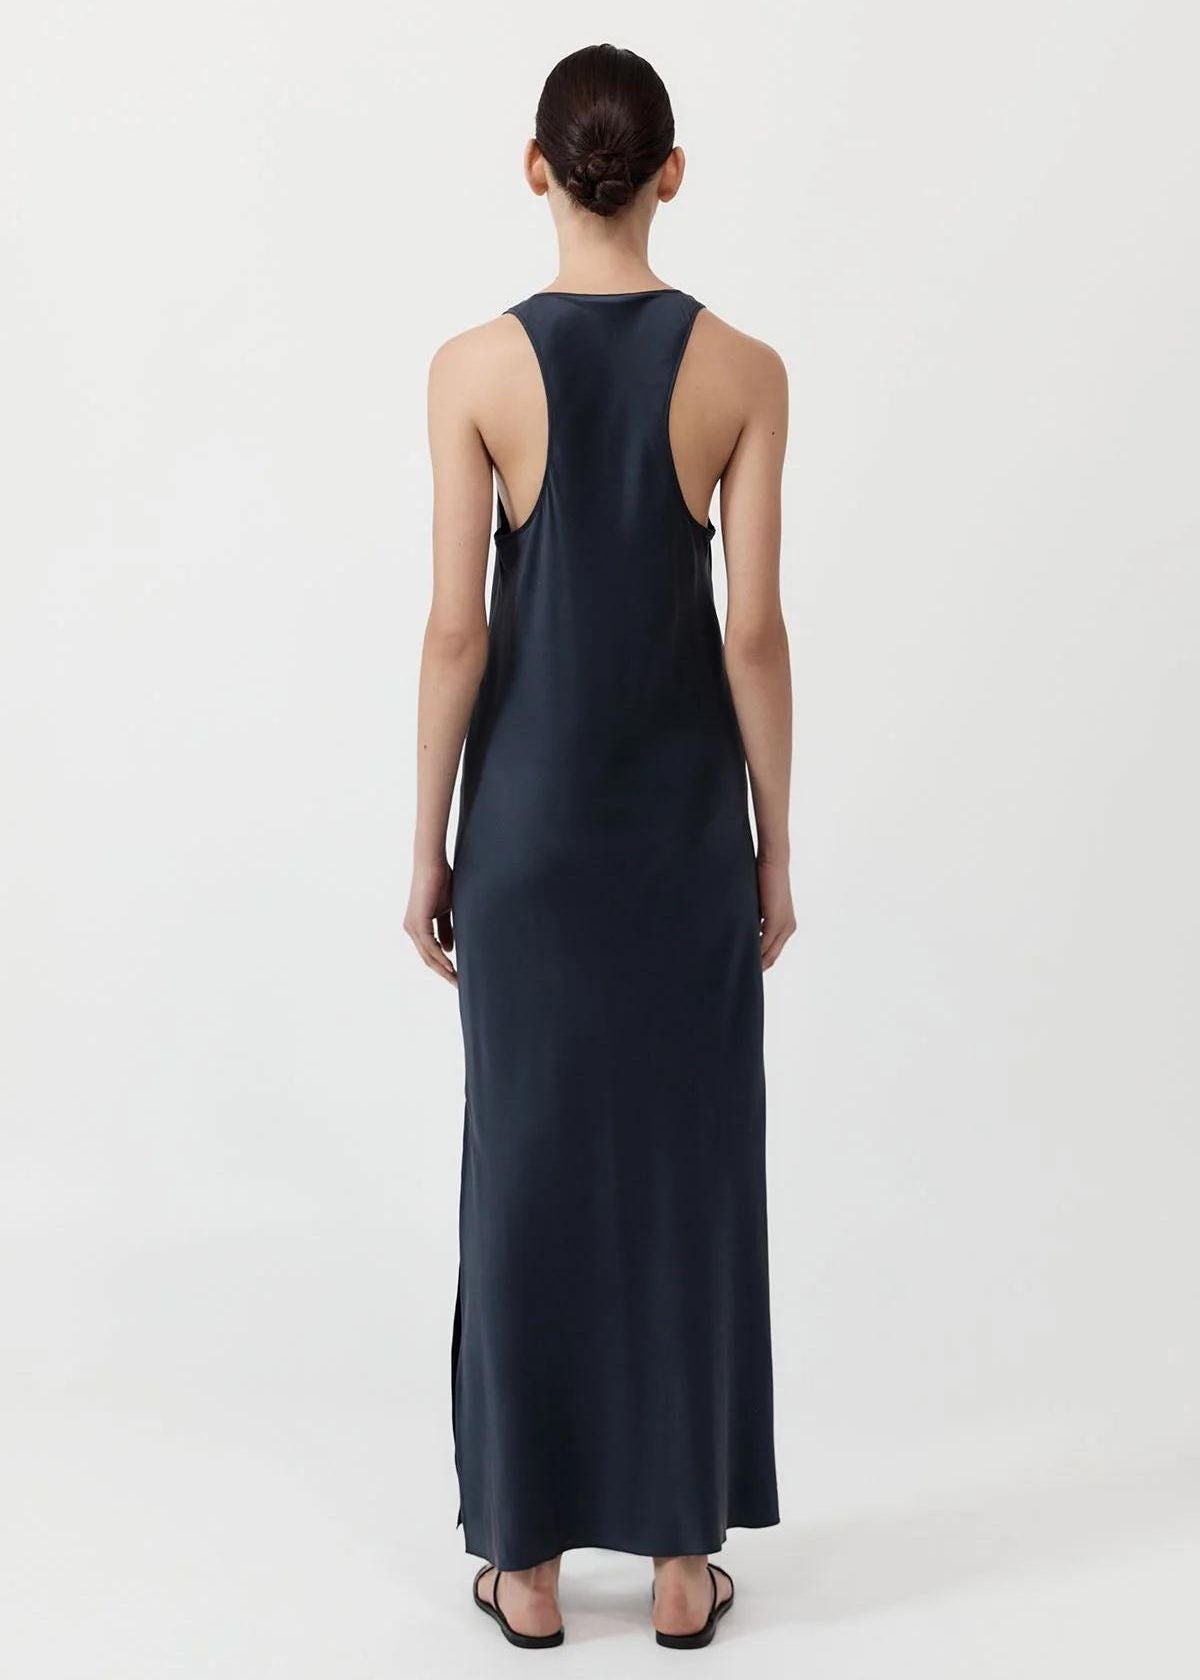 ST. AGNI Soft Silk Bias Tank Dress - Inkwell